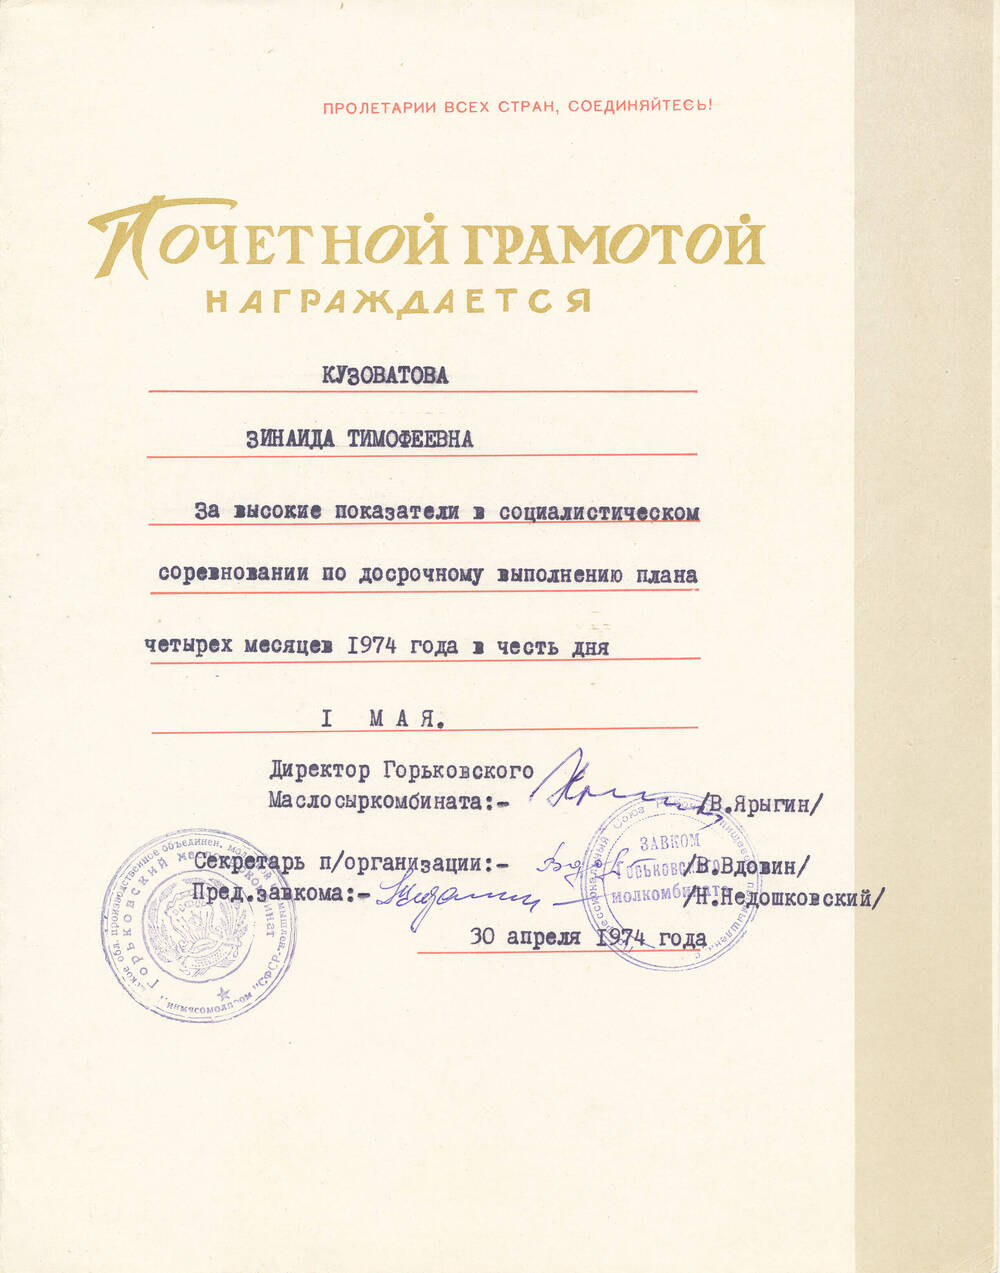 Почетная грамота Кузоватовой Зинаиды Тимофеевны от дирекции, парткома, завкома от 30.04.1974г. за высокие показатели в соцсоревновании